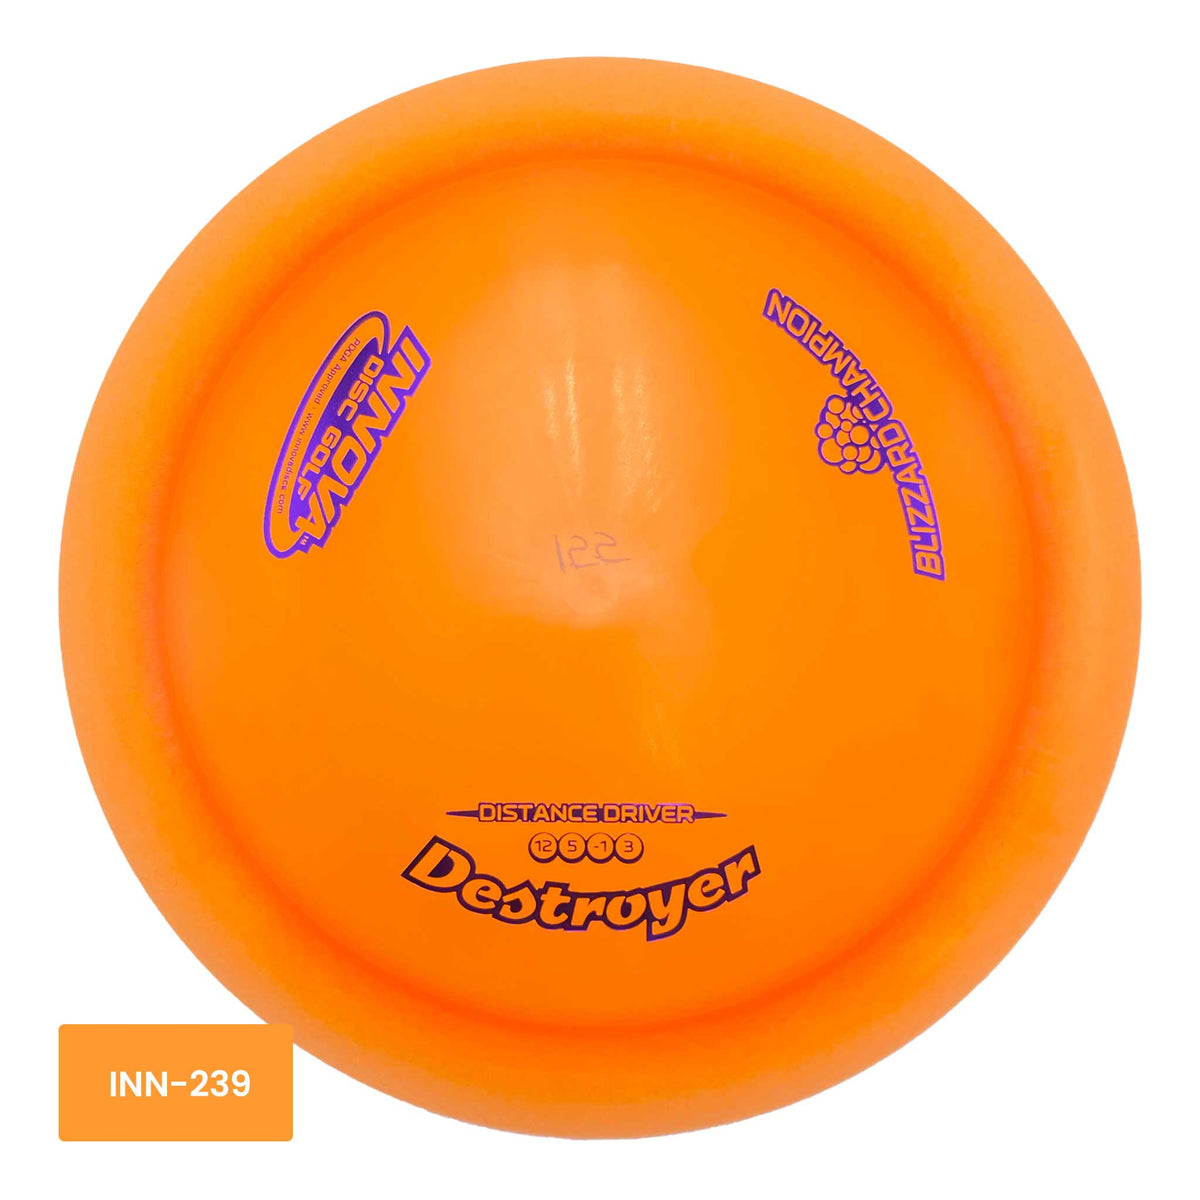 Innova Disc Golf Blizzard Champion Destroyer distance driver - Orange / Purple